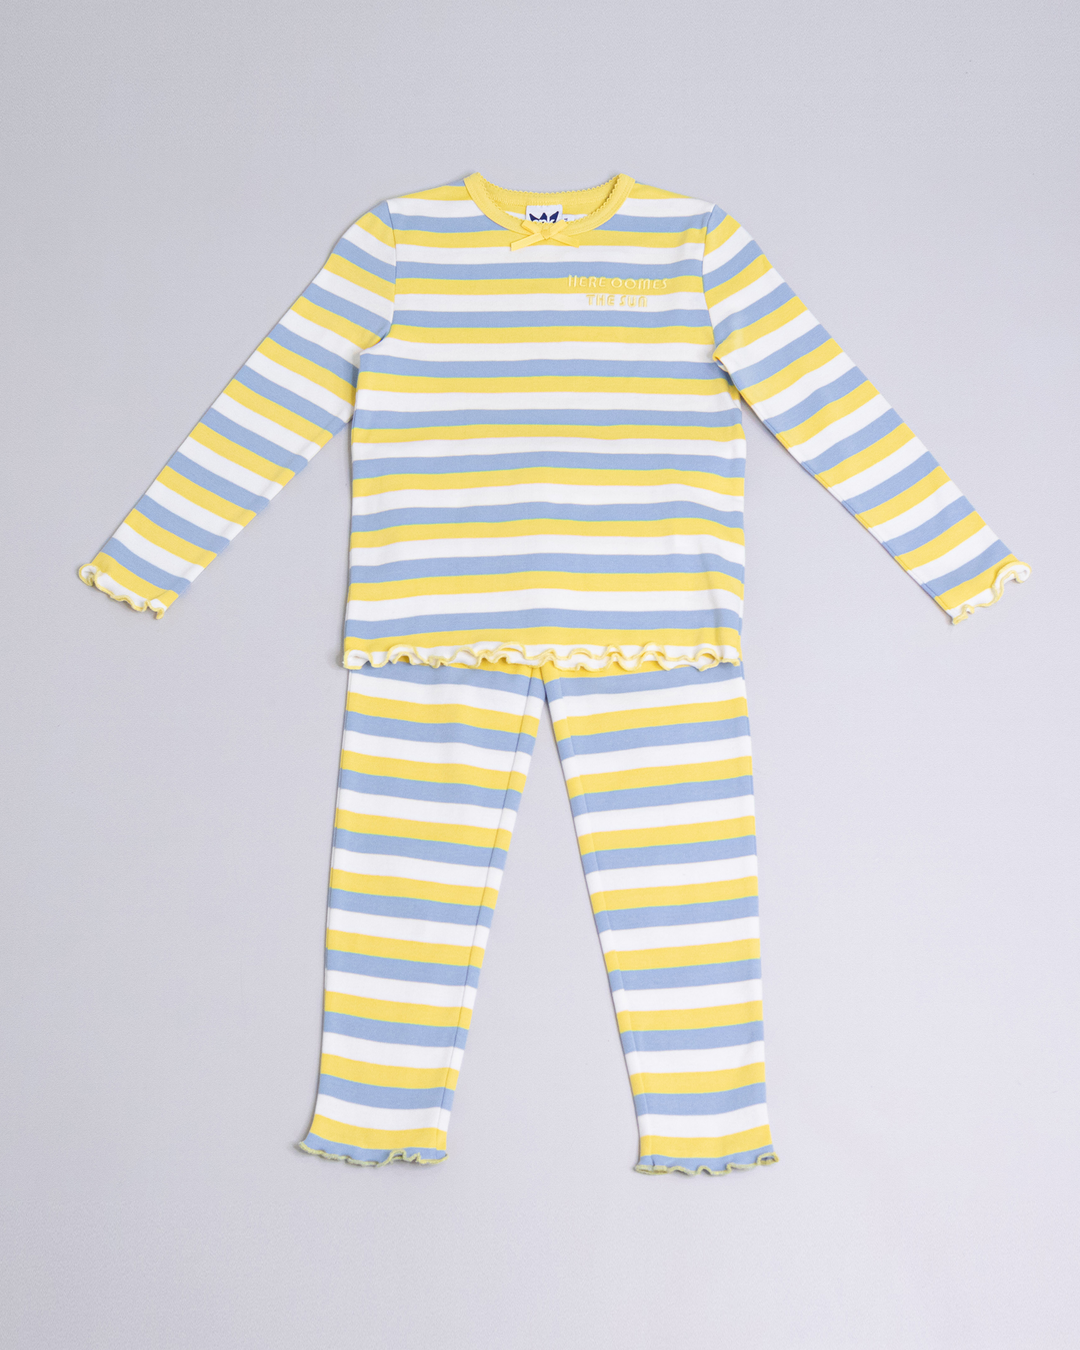 Pijama de rayas de color amarillo, blanco y azul